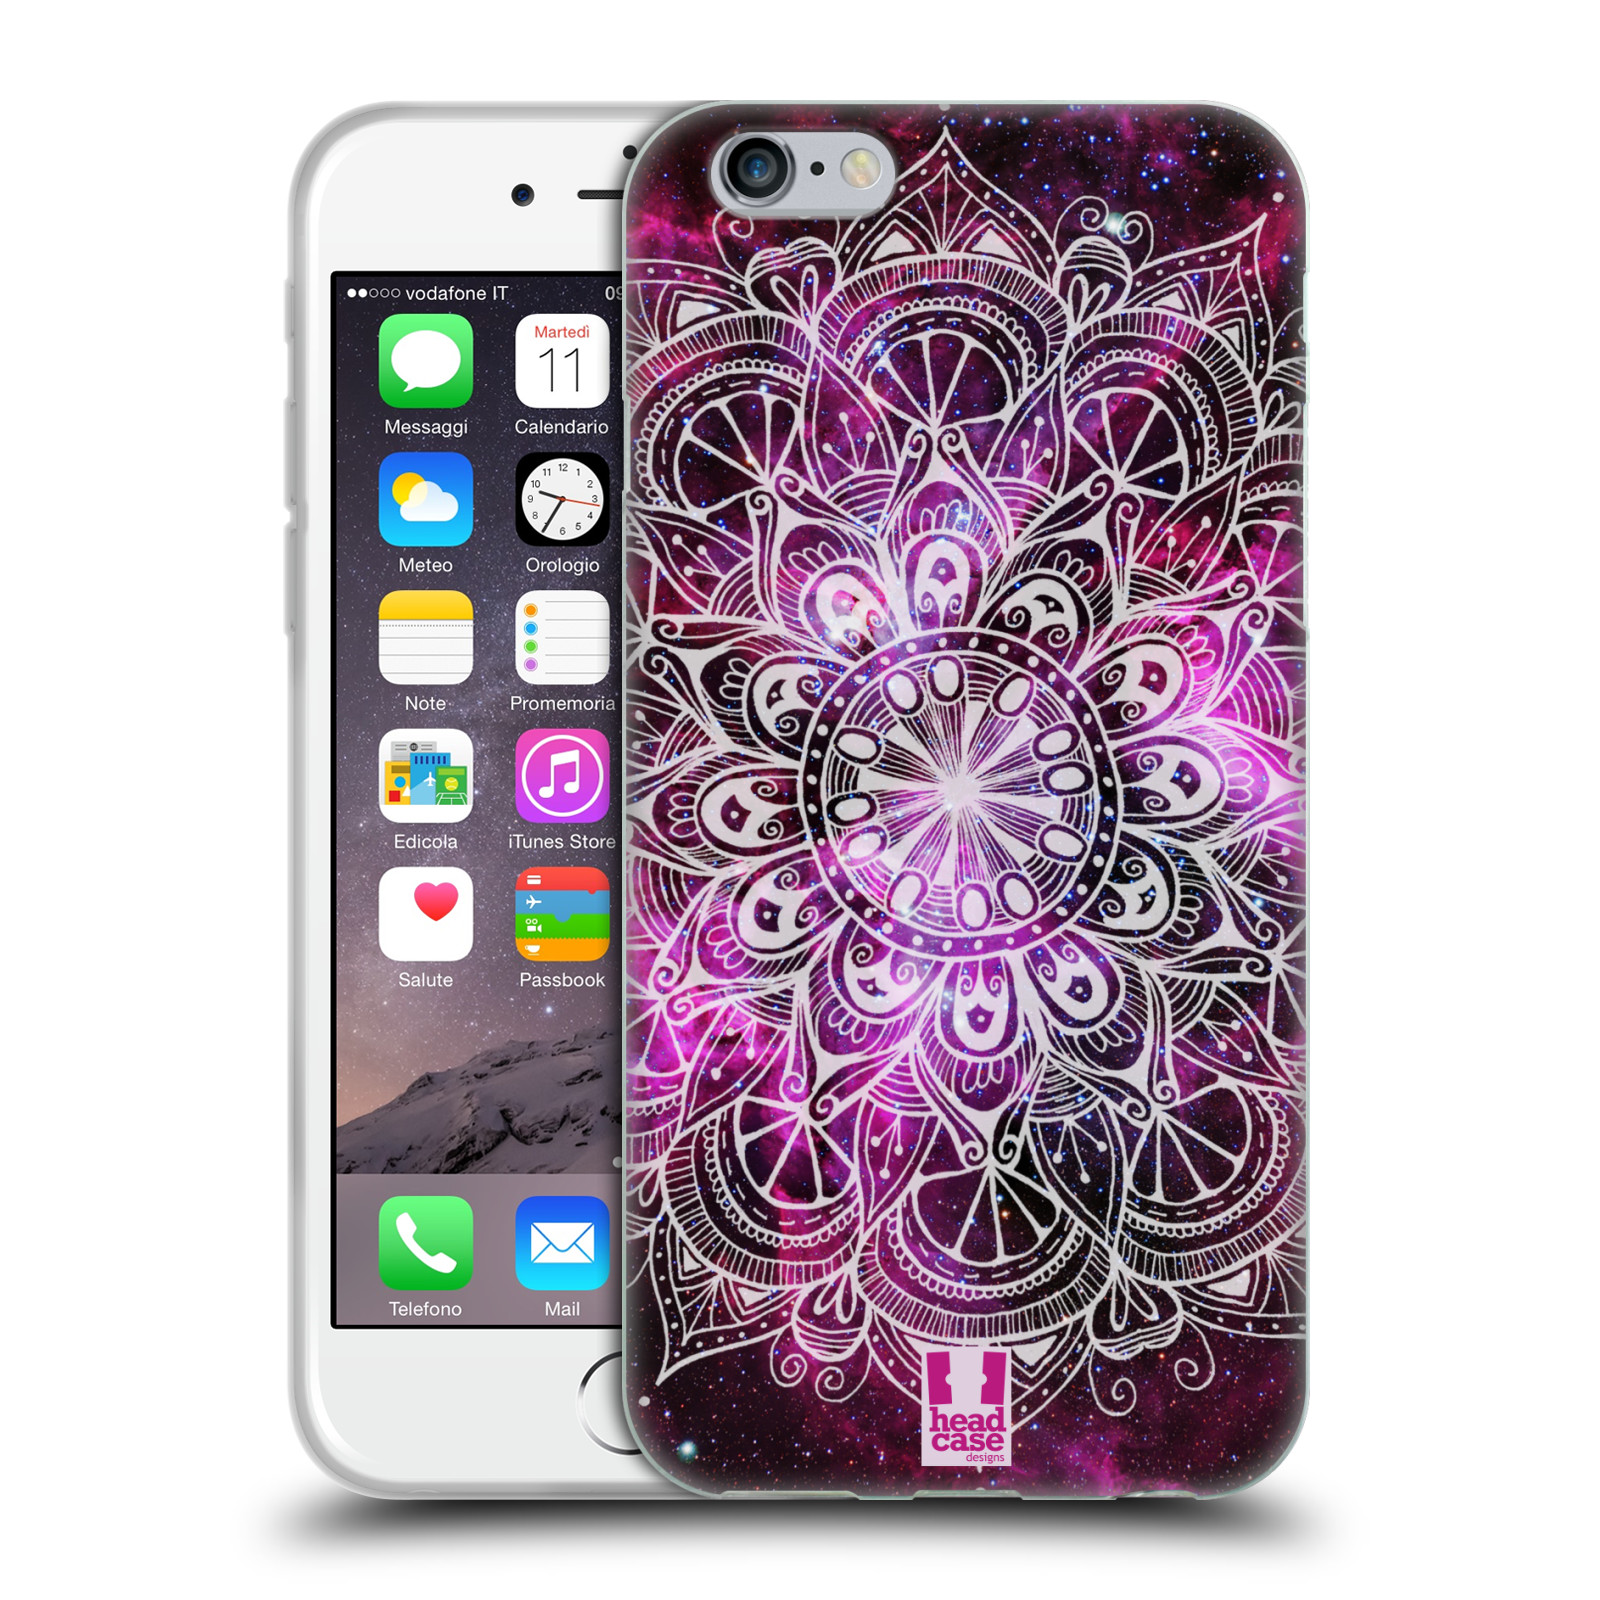 Silikonové pouzdro na mobil Apple iPhone 6 HEAD CASE Mandala Doodle Nebula (Silikonový kryt či obal na mobilní telefon Apple iPhone 6)